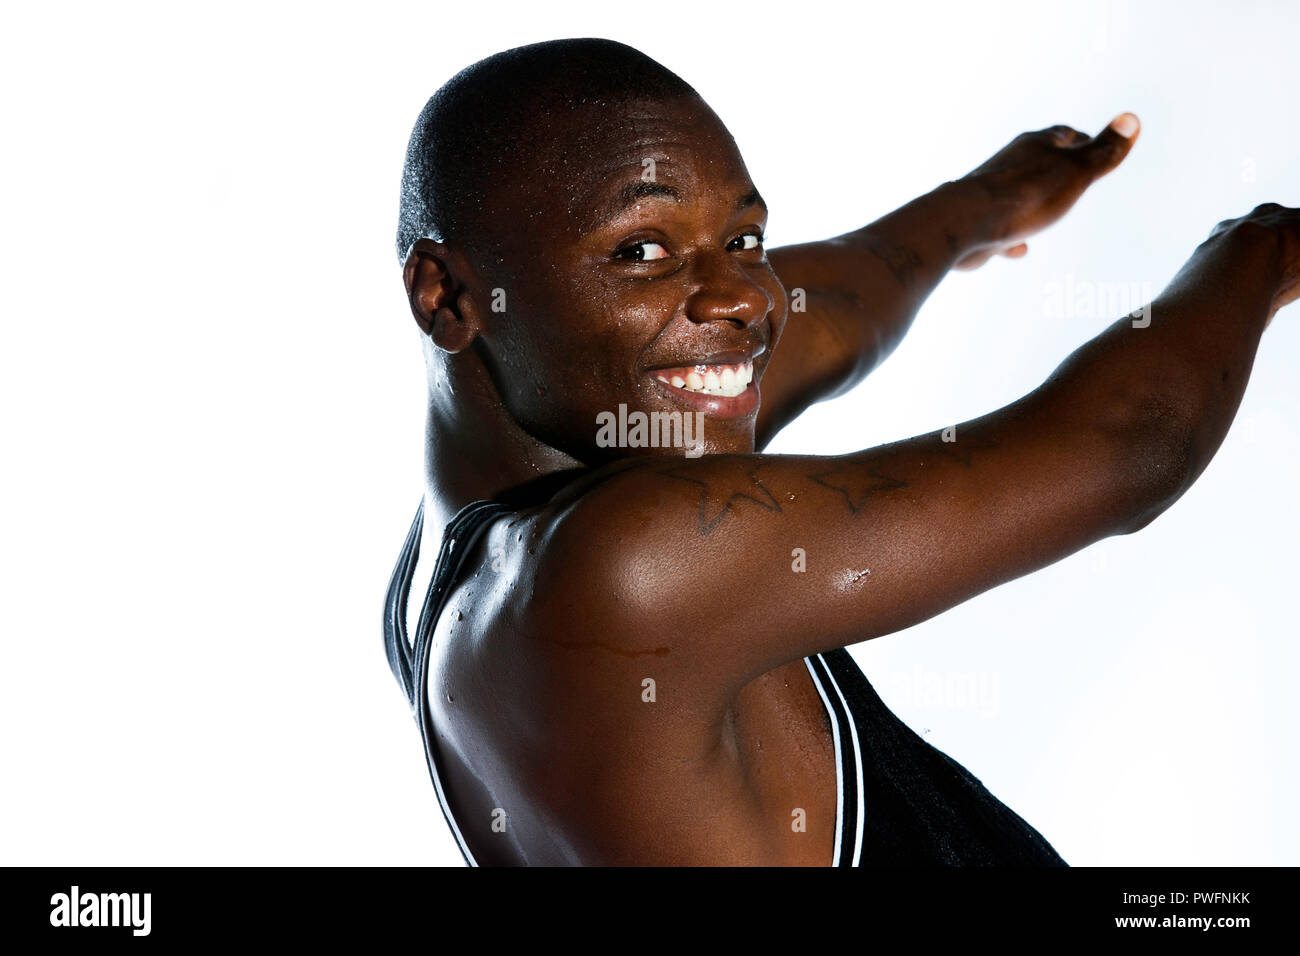 Bel giovane africano danza maschile e sorridente indietro la macchina fotografica con un viso bagnato e gocce di acqua sulle sue braccia. Mostra tre prigione tatuaggi Foto Stock